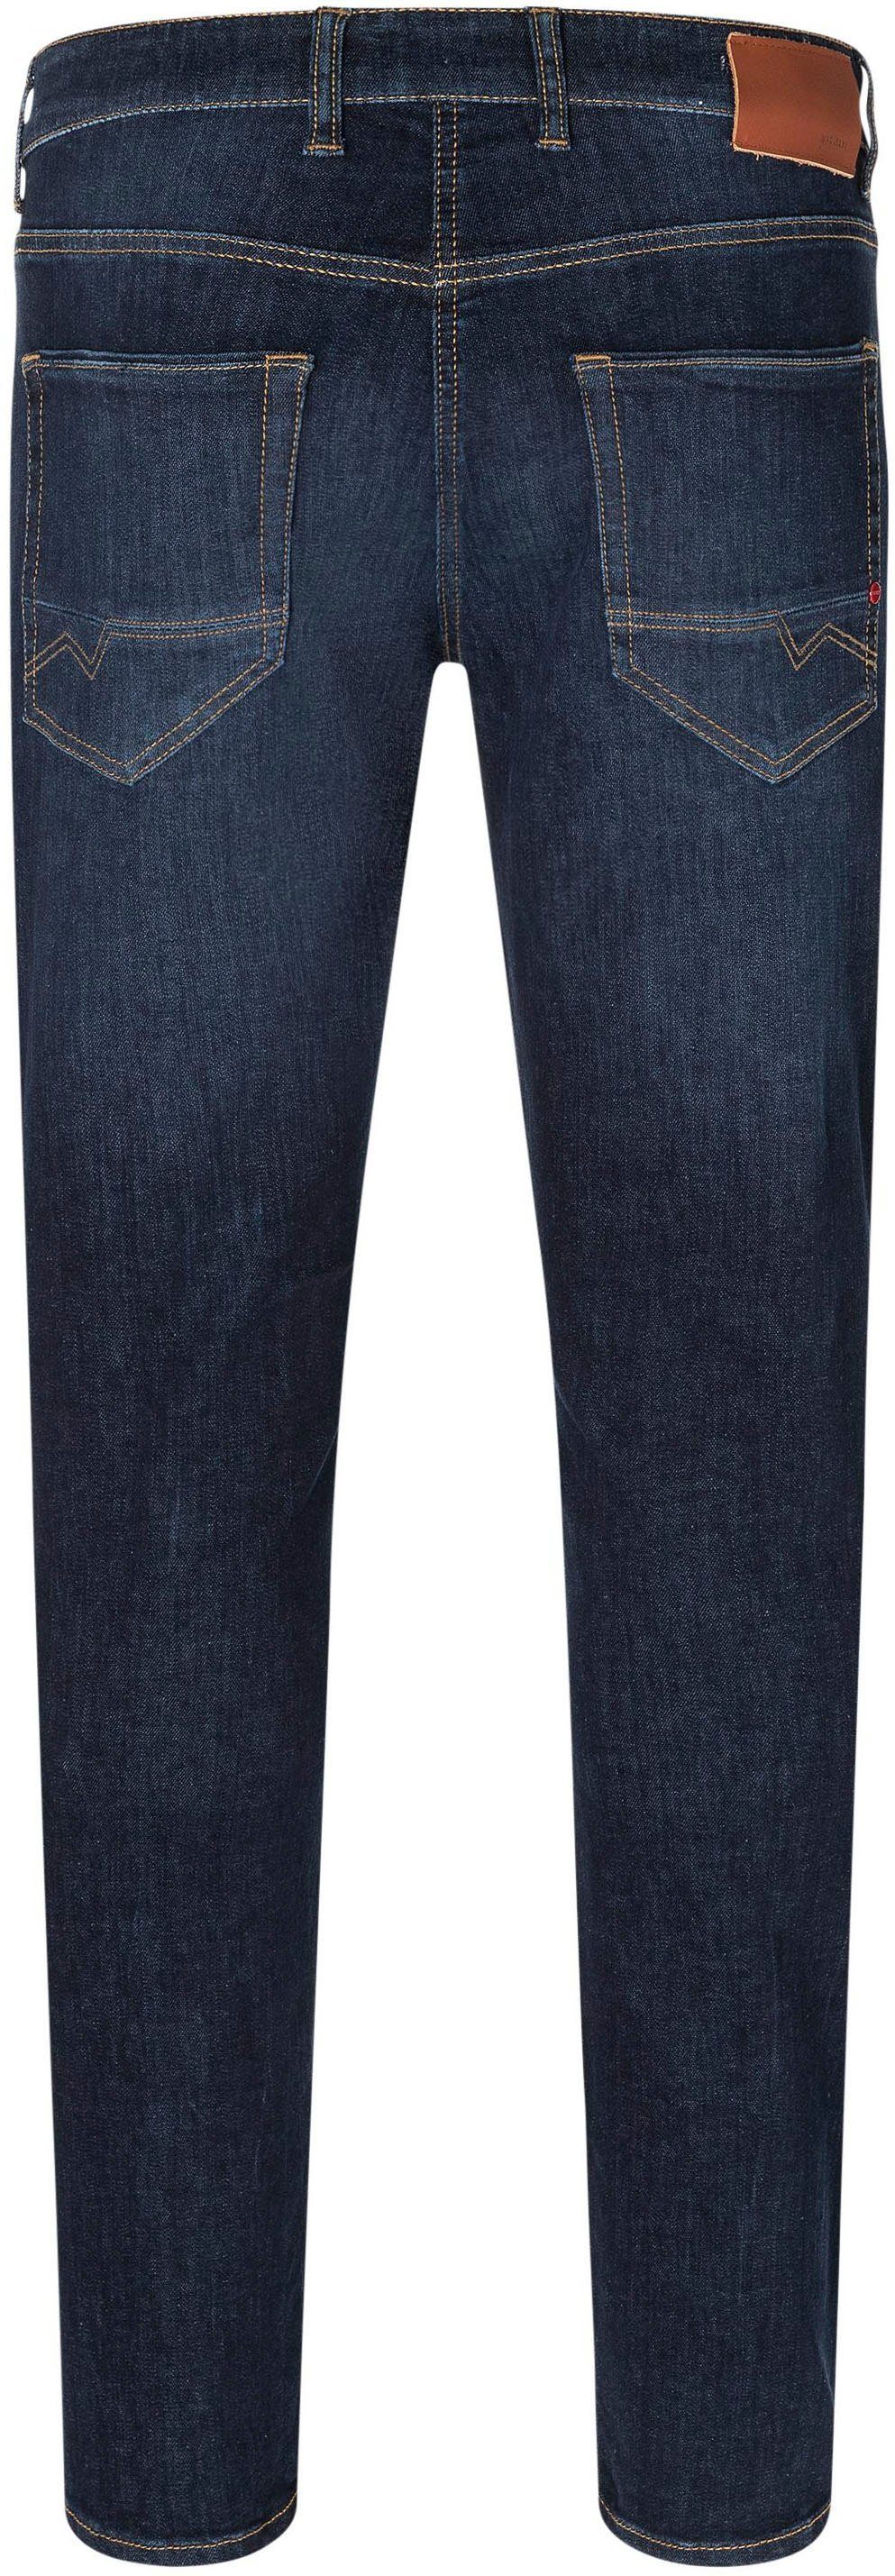 used Straight-Jeans Pipe MAC blue Arne dark